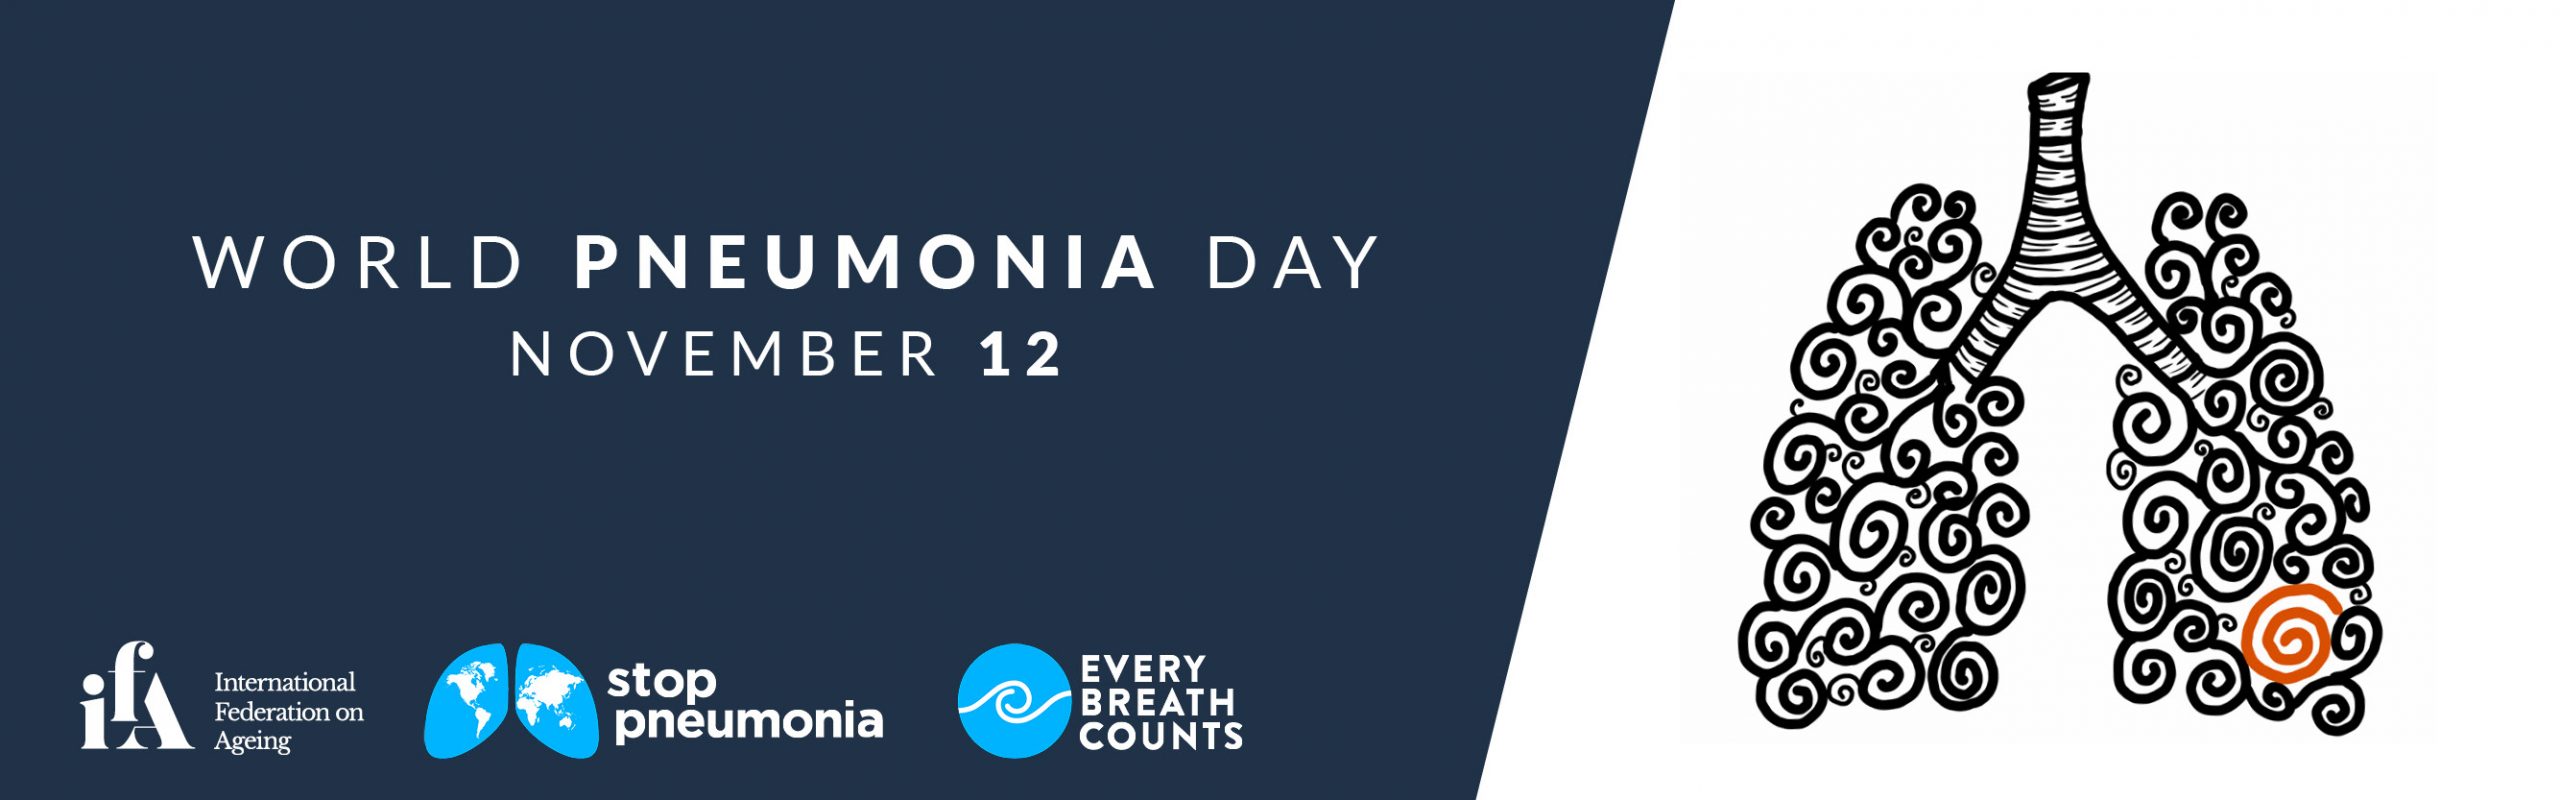 World Pneumonia Day web banner